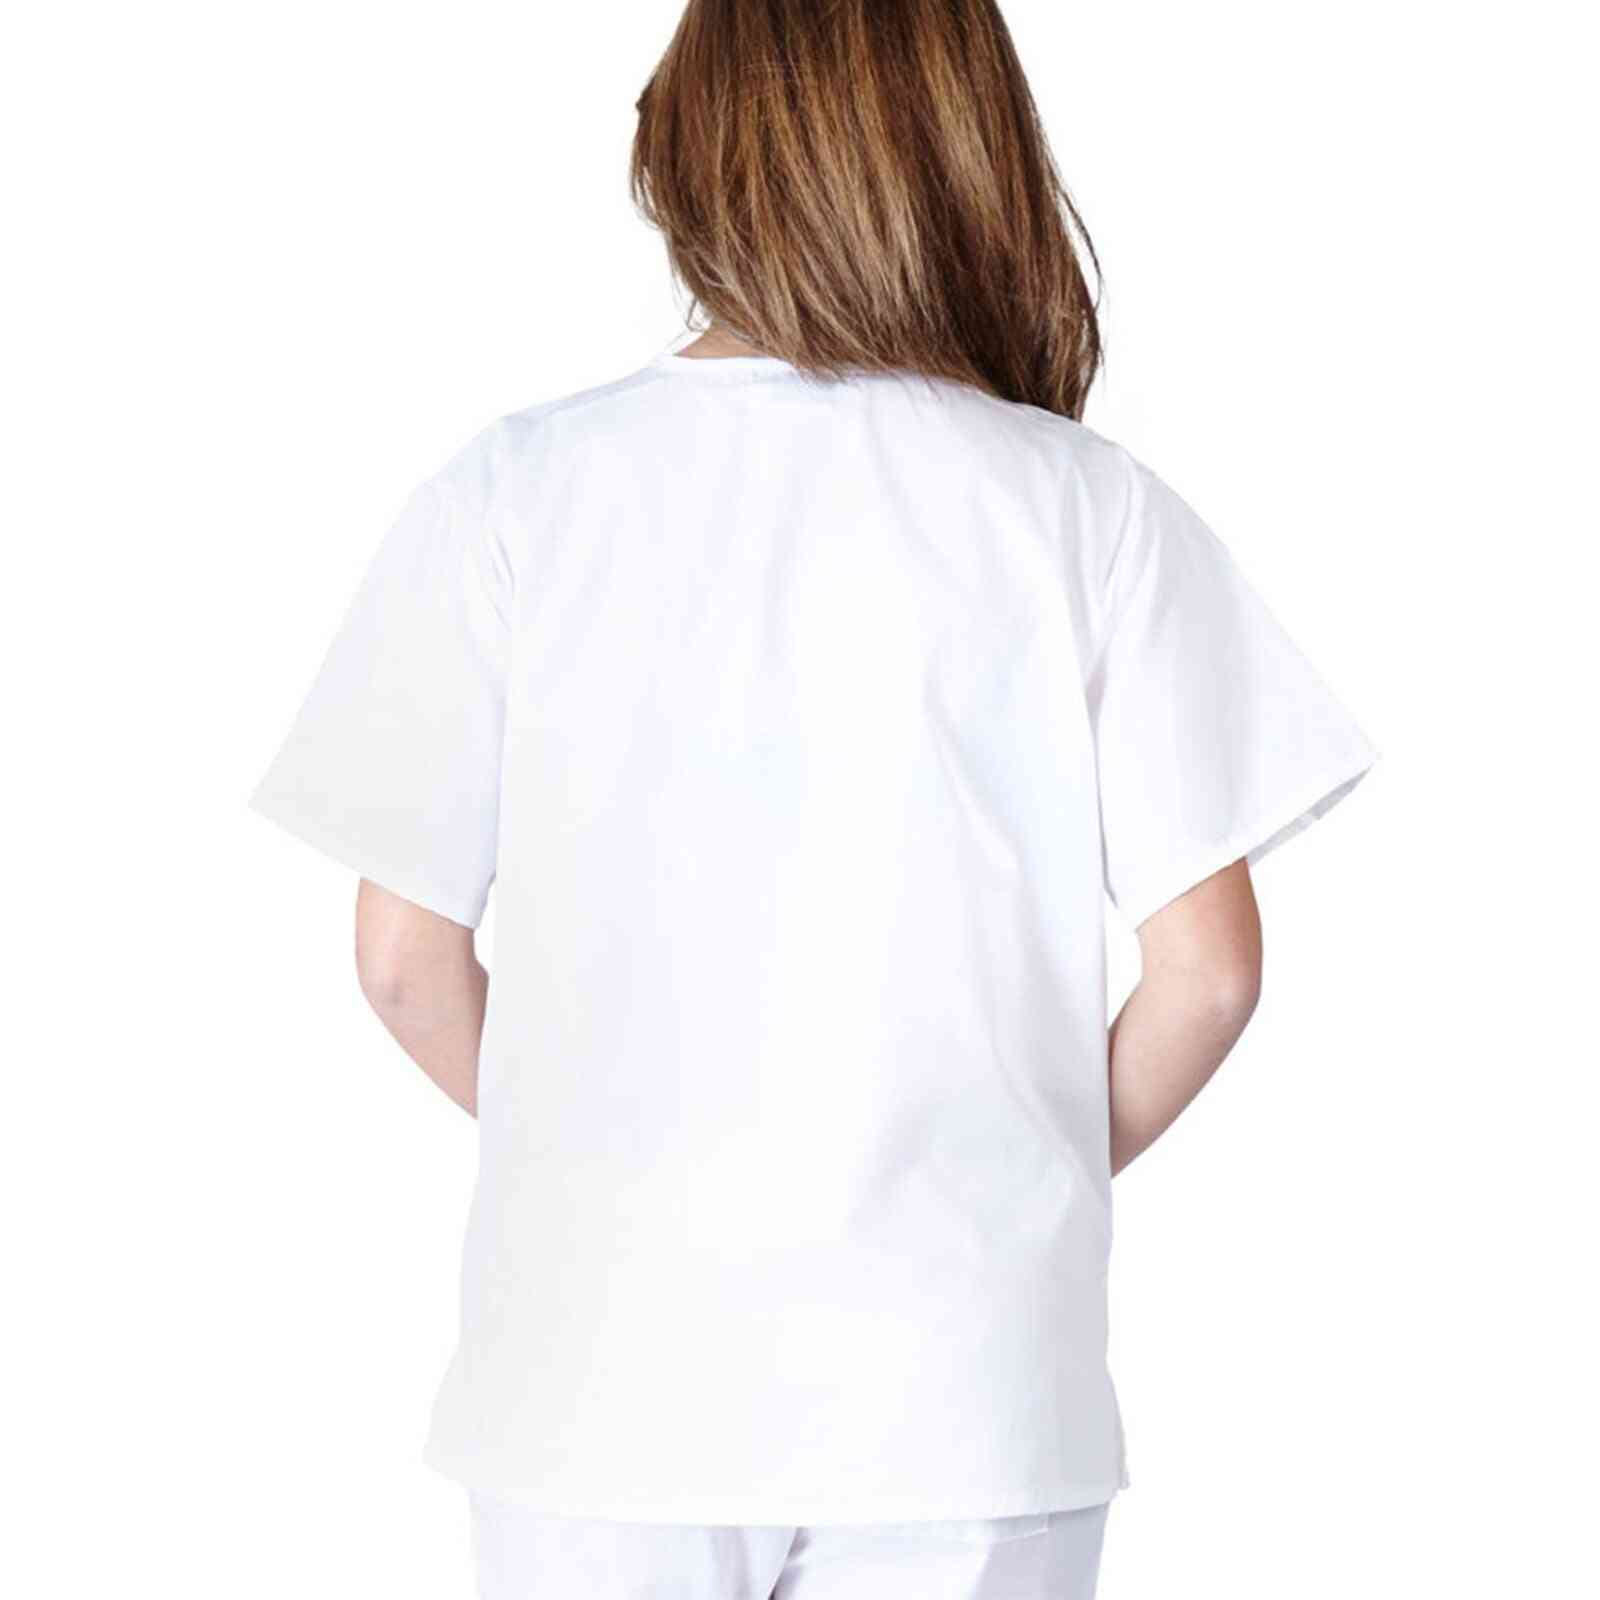 Kvinder skjorter toppe korte ærmer v-hals toppe sygeplejerske arbejder uniform